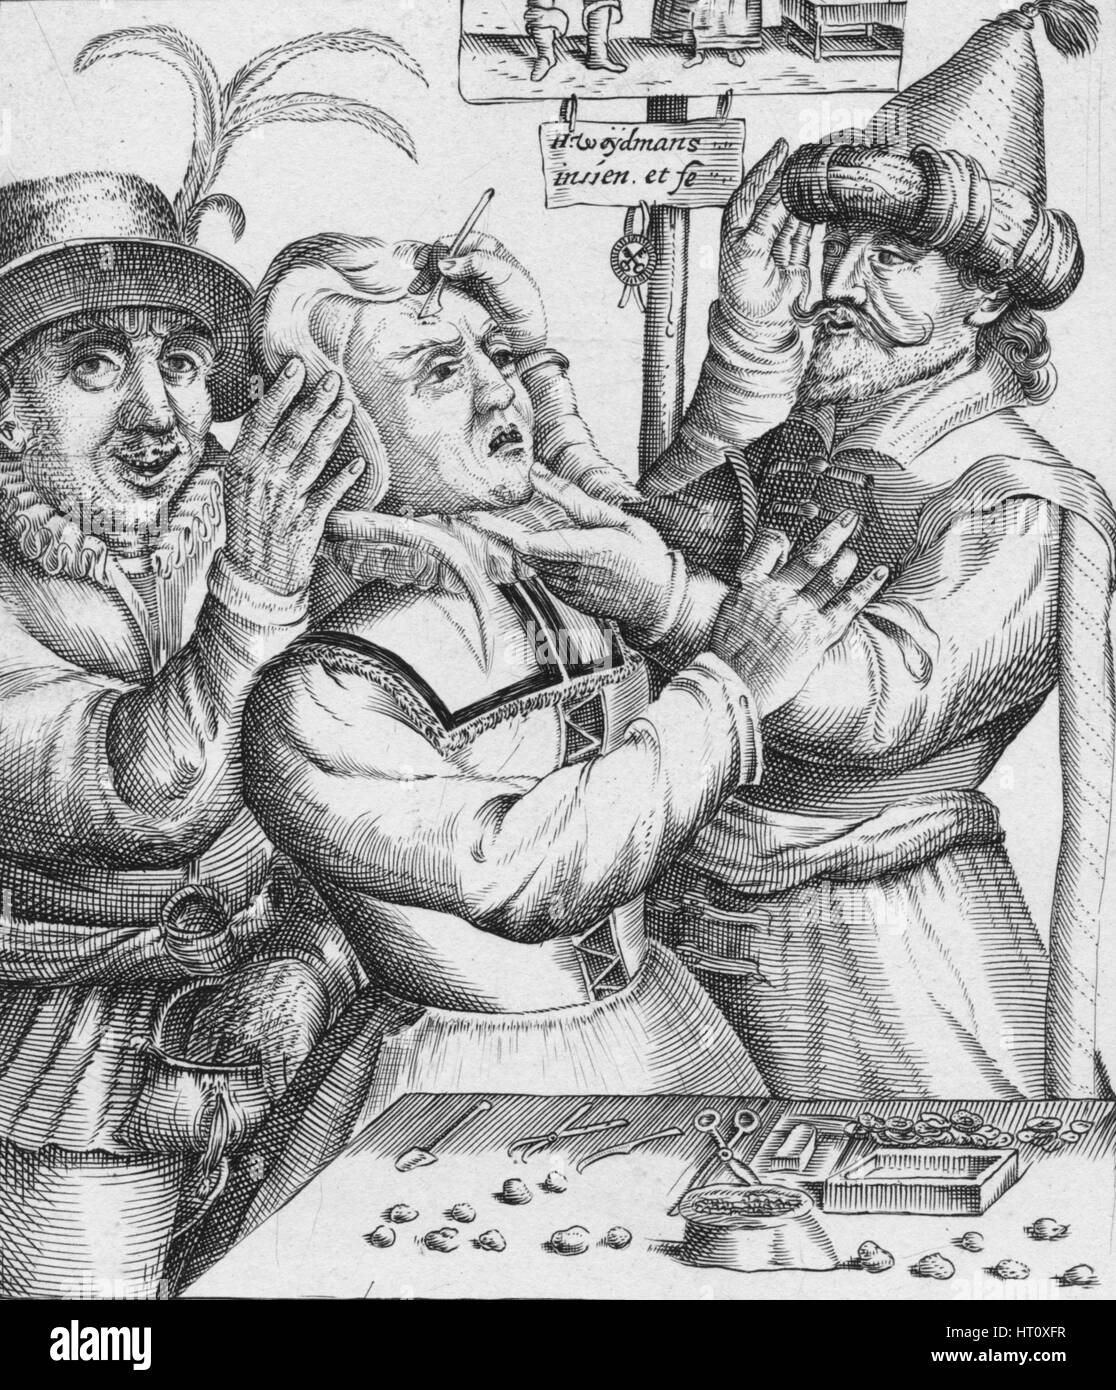 "Loopt Loopt Met Groot Verblyden,, Hier Salmen Twyf van Lije Snyden", 17. Jahrhundert. Künstler: HW Weydman. Stockfoto